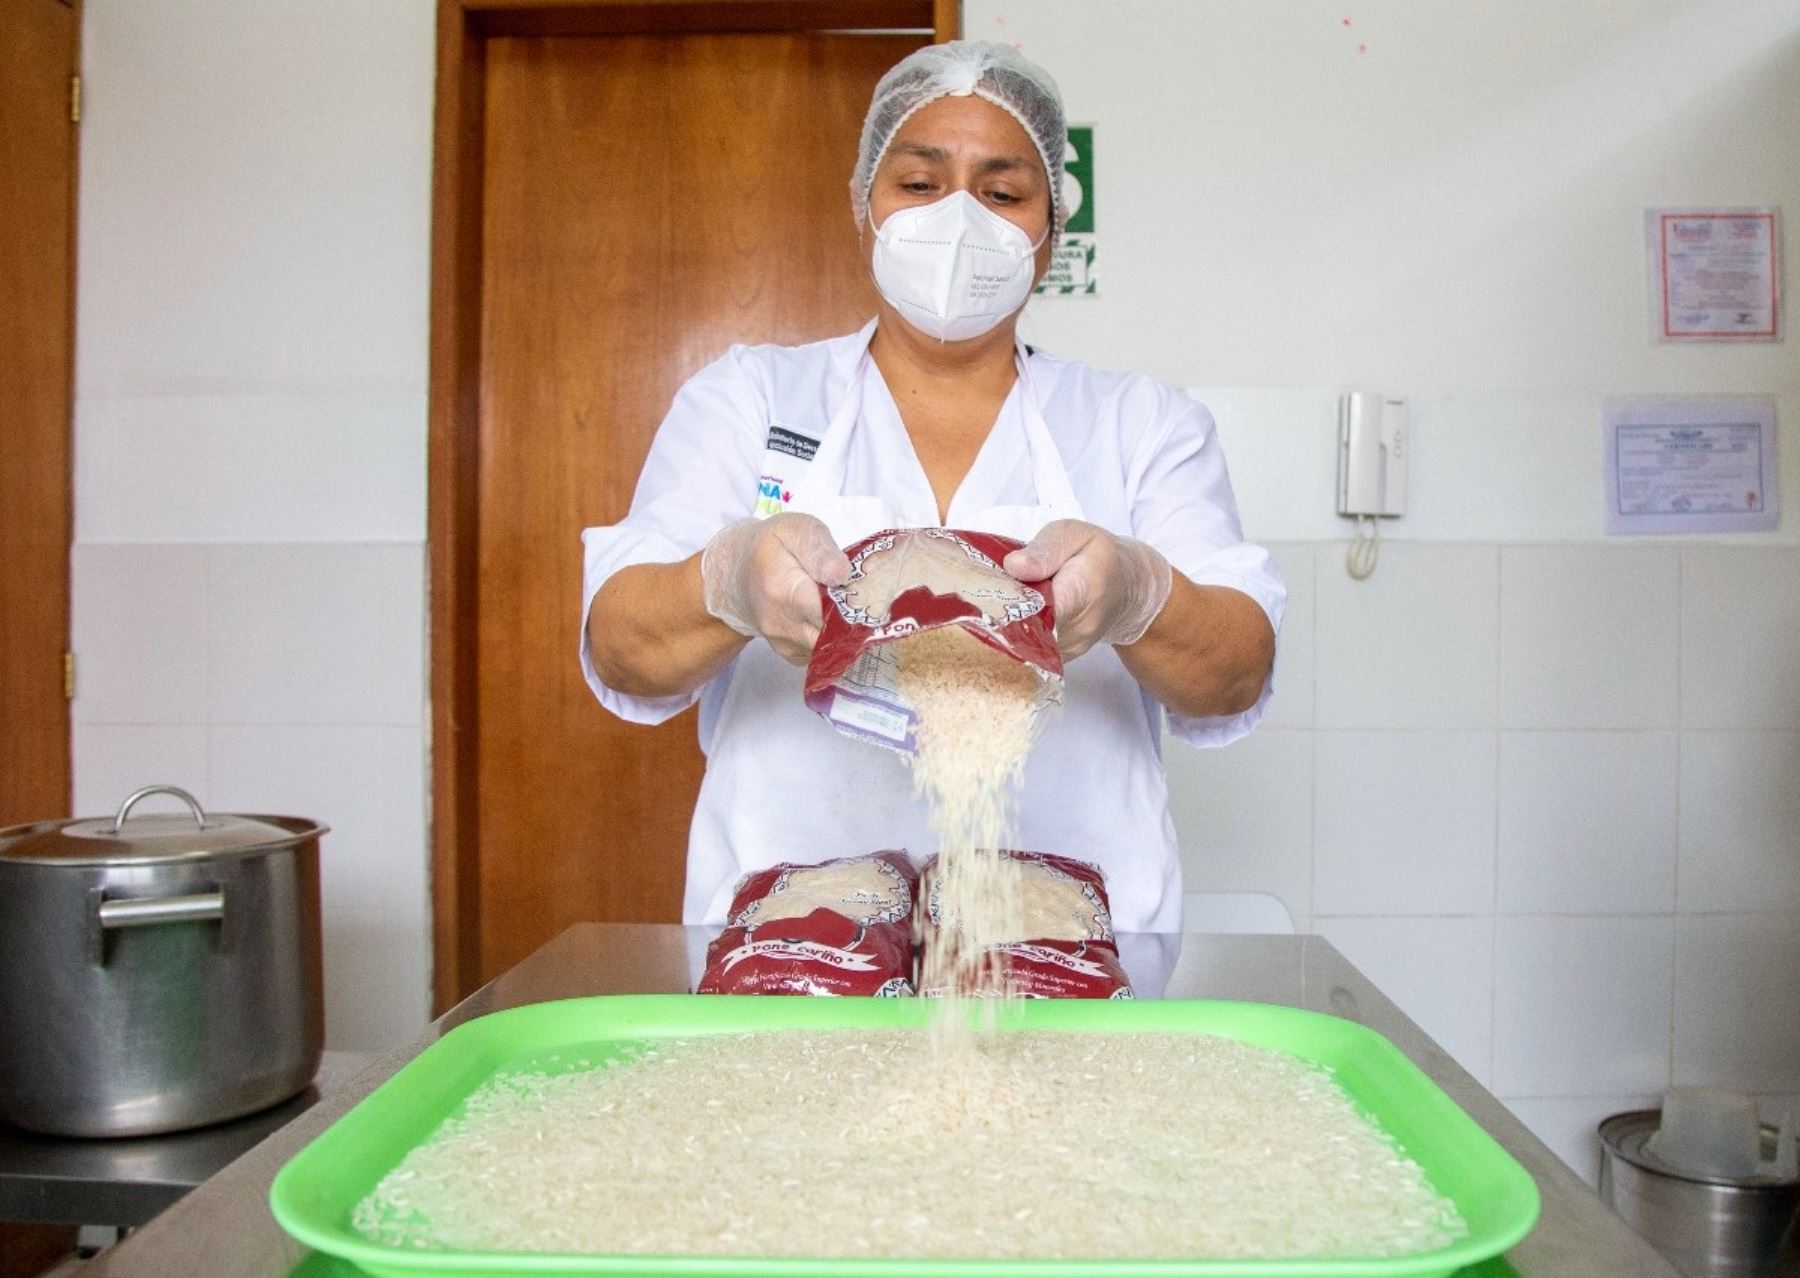 El programa Cuna Más promueve el consumo de arroz fortificado para prevenir la anemia infantil en niños menores de 36 meses de edad.